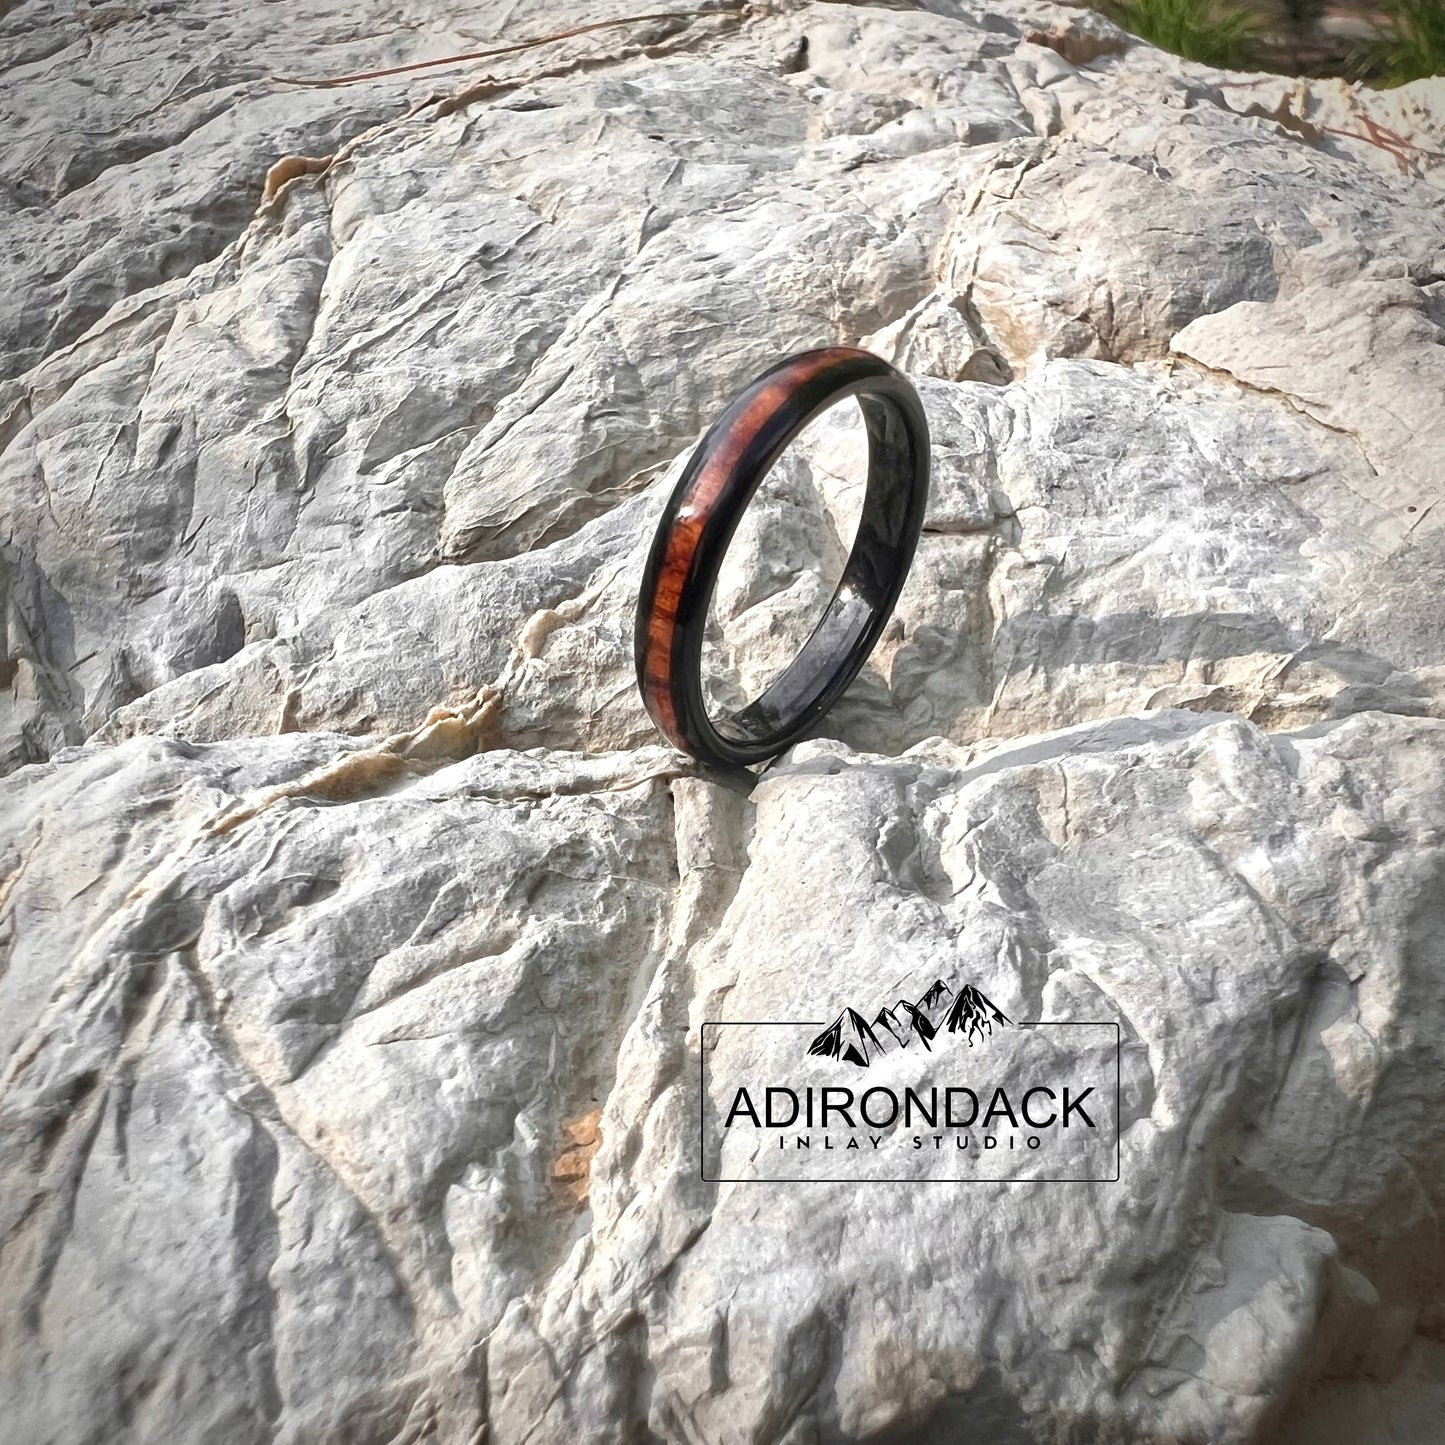 Slim 4mm Koa wood Black Tungsten Carbide Band - Premium Custom Jewelry from Adirondack Inlay Studio LLC - Just $114! Shop now at Adirondack Inlay Studio LLC